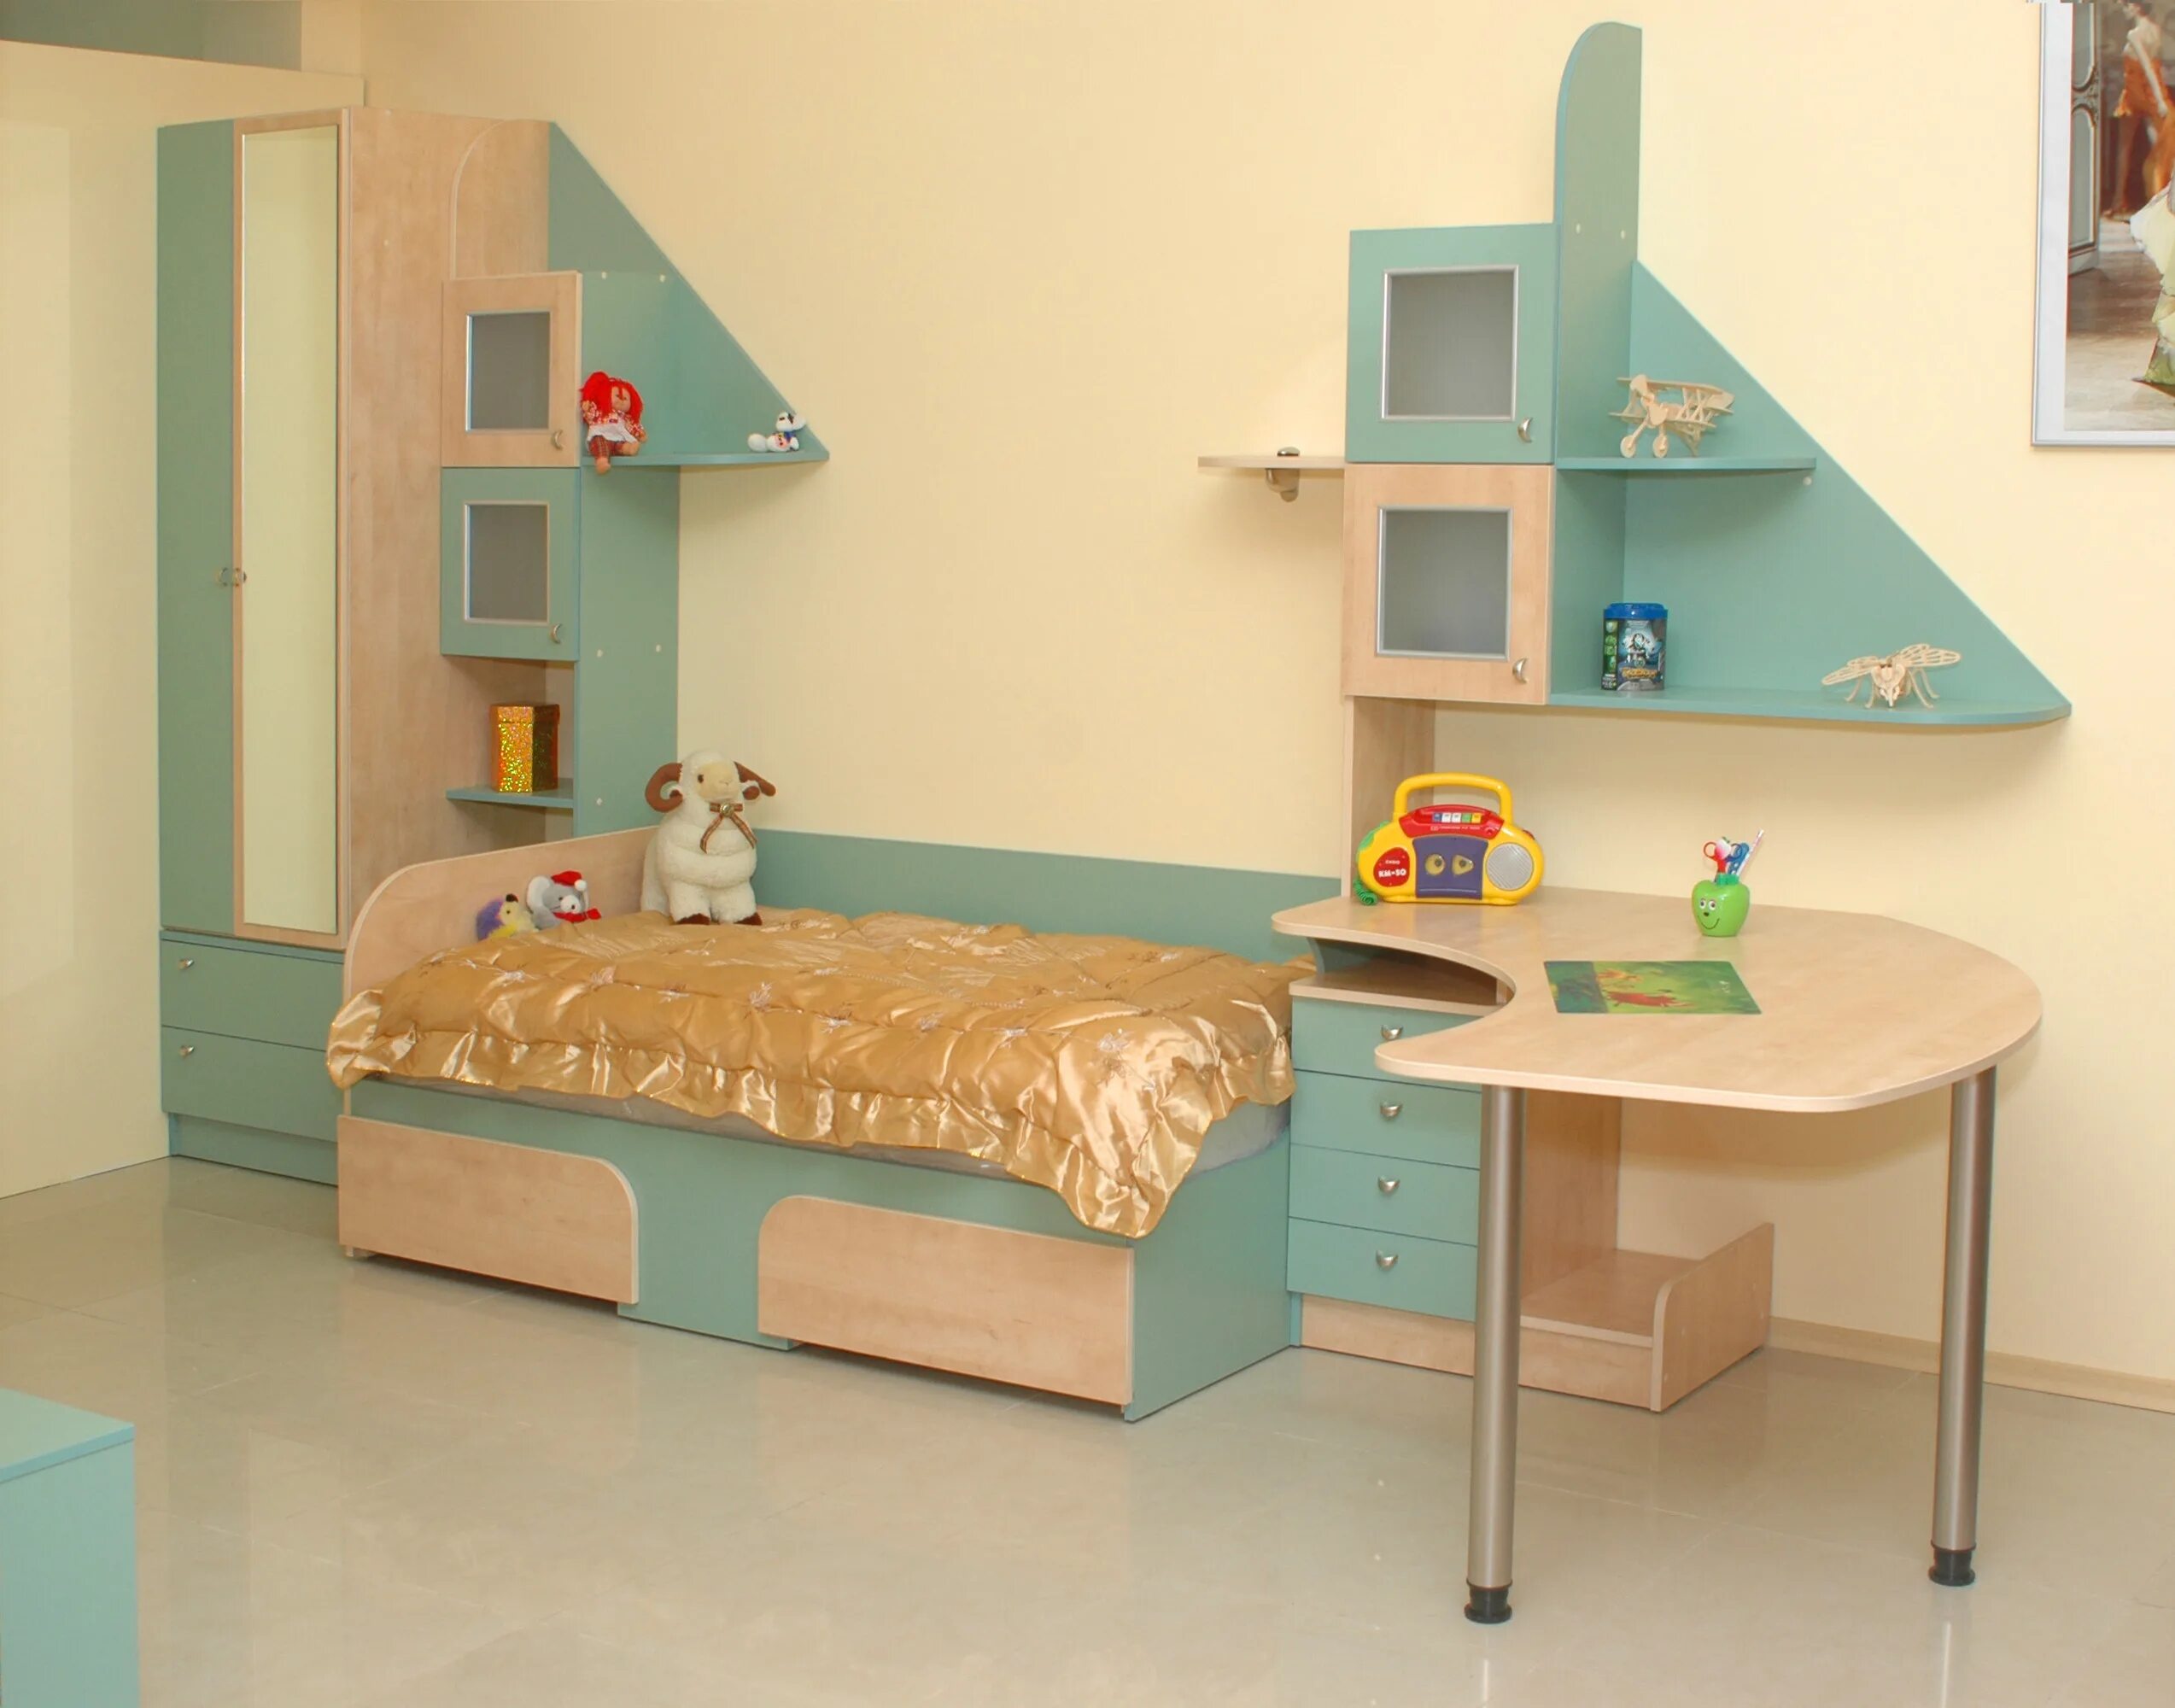 Детская мебель на заказ mosmirmebeli. Мебель в детскую комнату. Детская корпусная мебель. Детская мебель из ДСП. Детская мебель из ЛДСП.